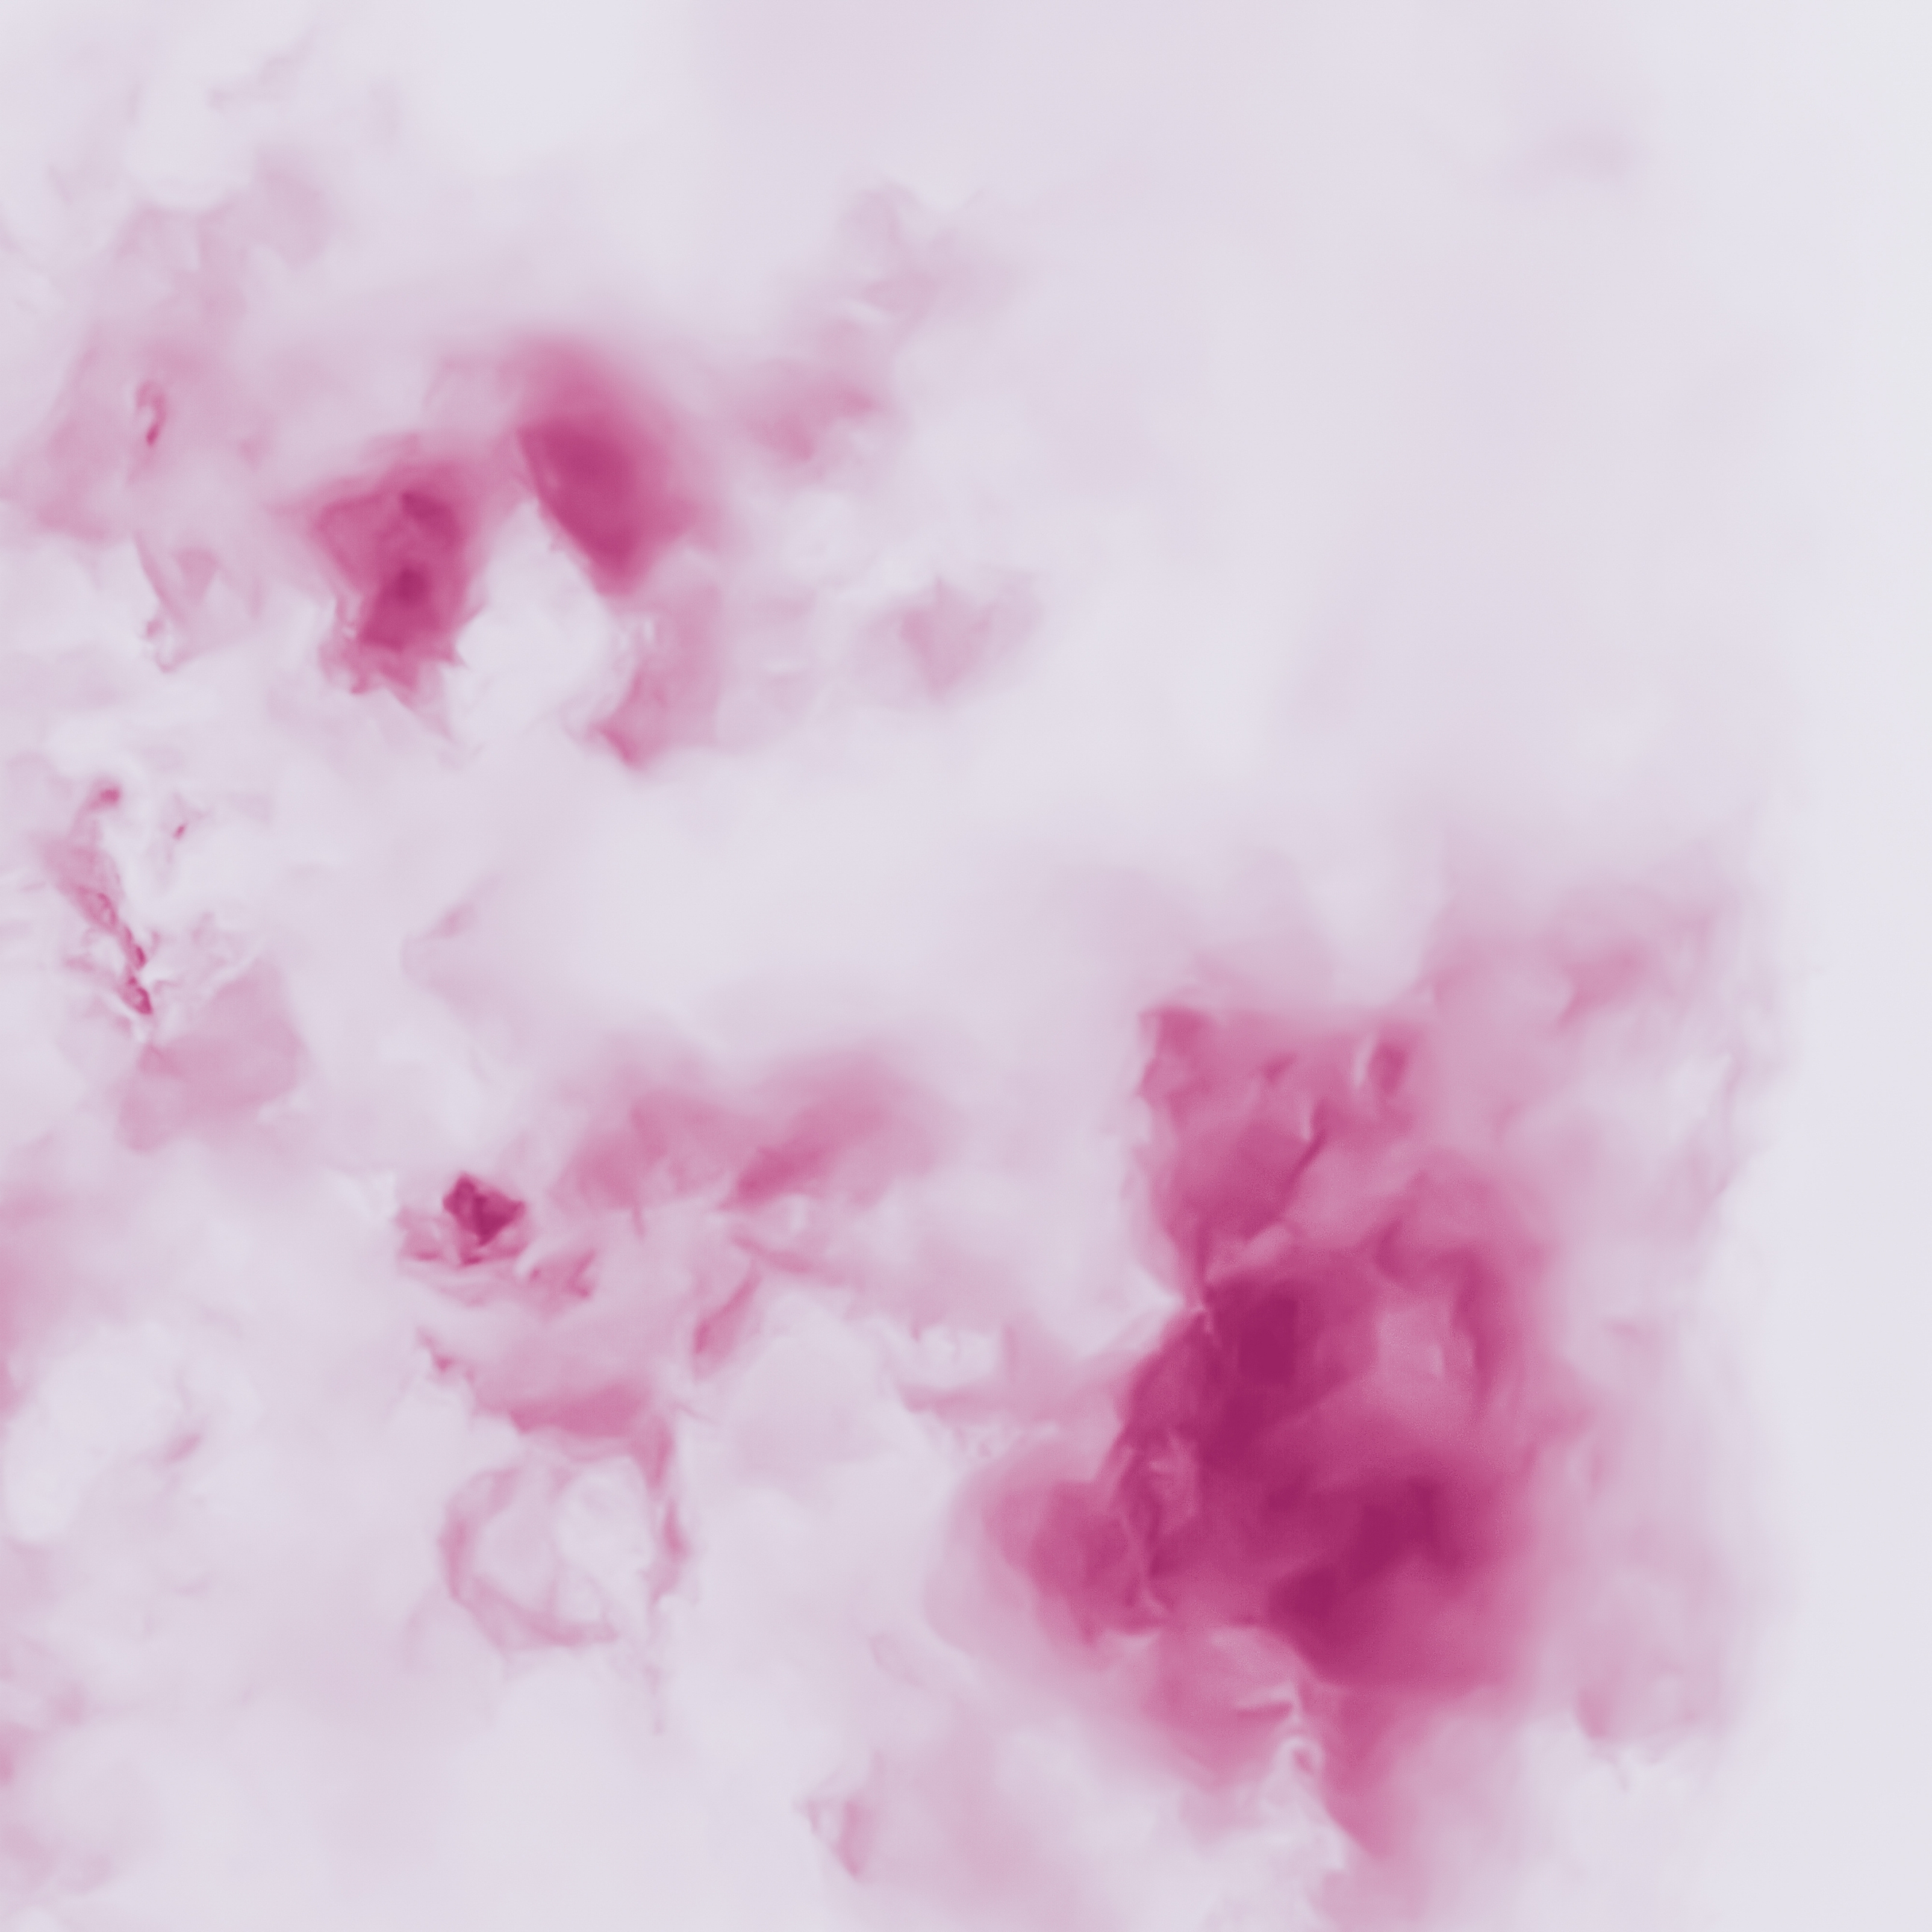 iPad Wallpapers Minimalist Pink Splash Cloudy Art iPad Wallpaper 3208x3208 px